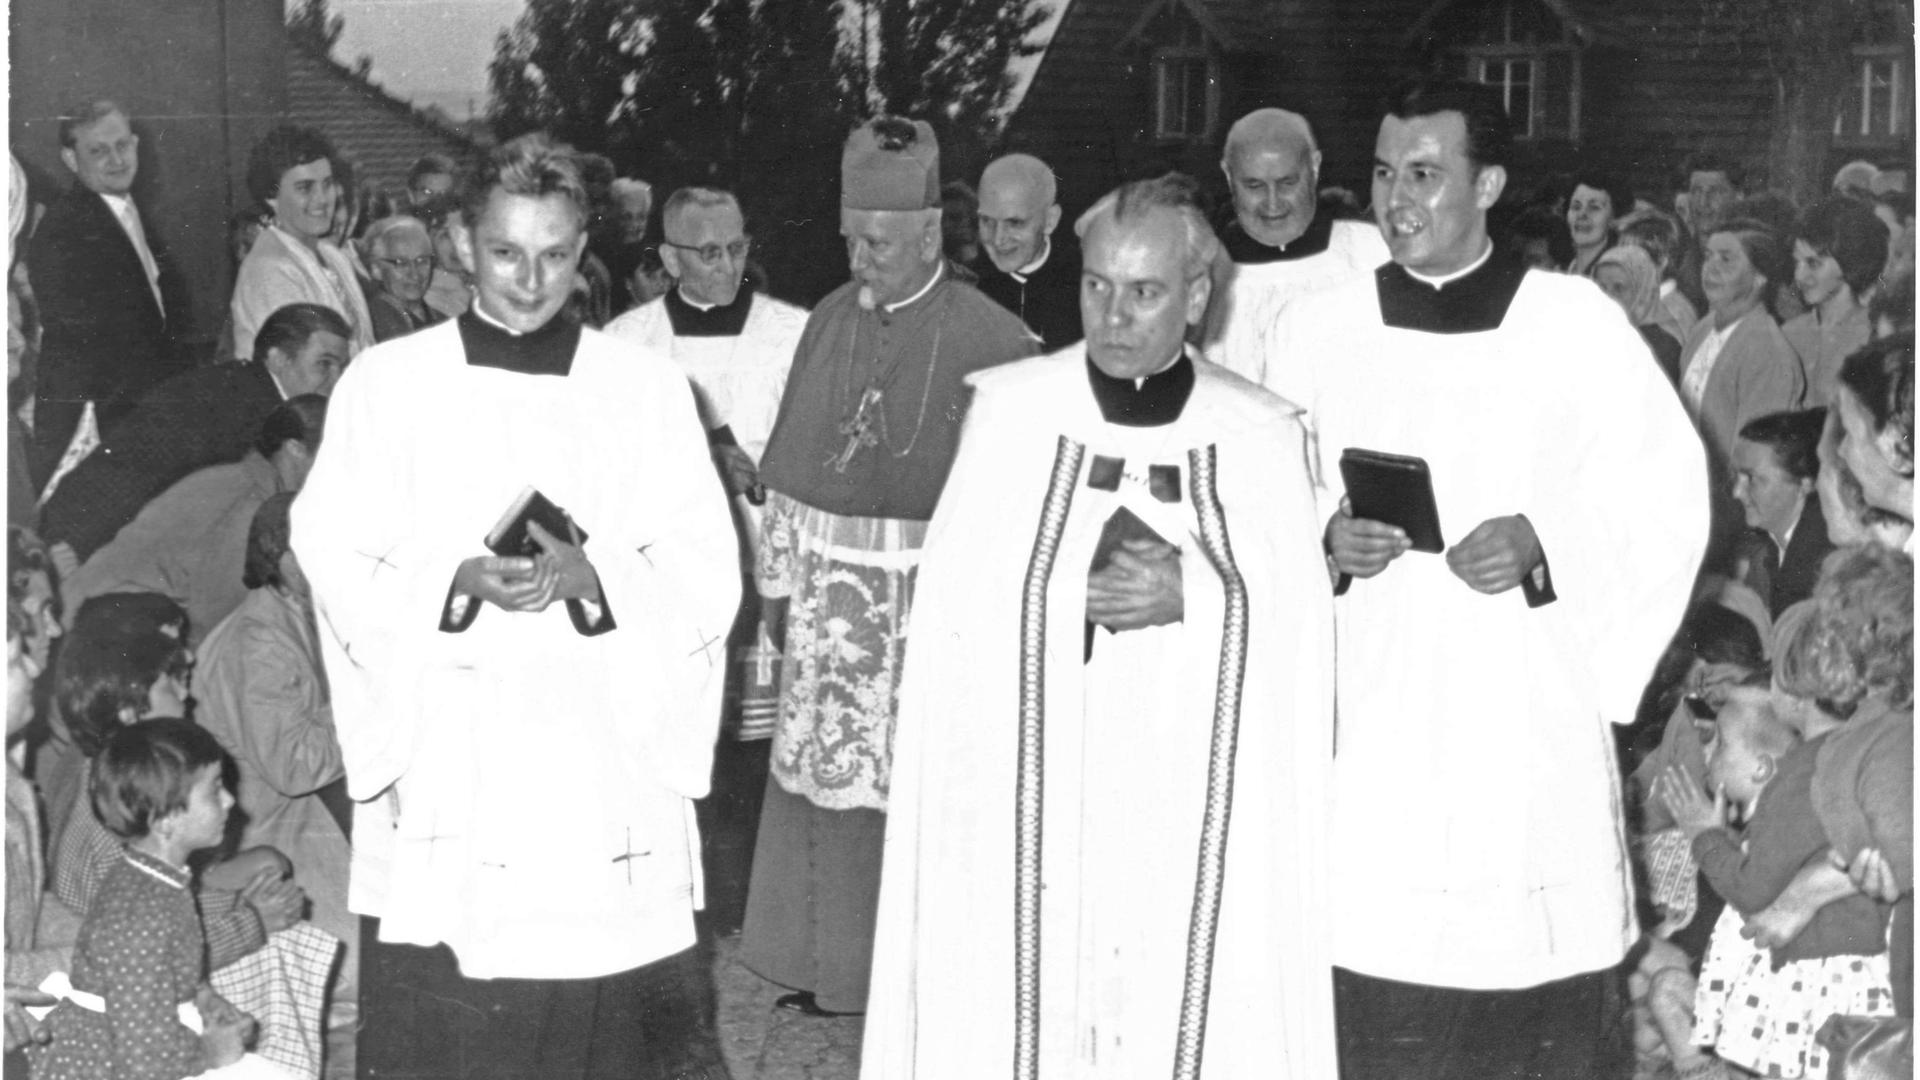 Geistliche in Ende 50er / Anfang 60er Jahre